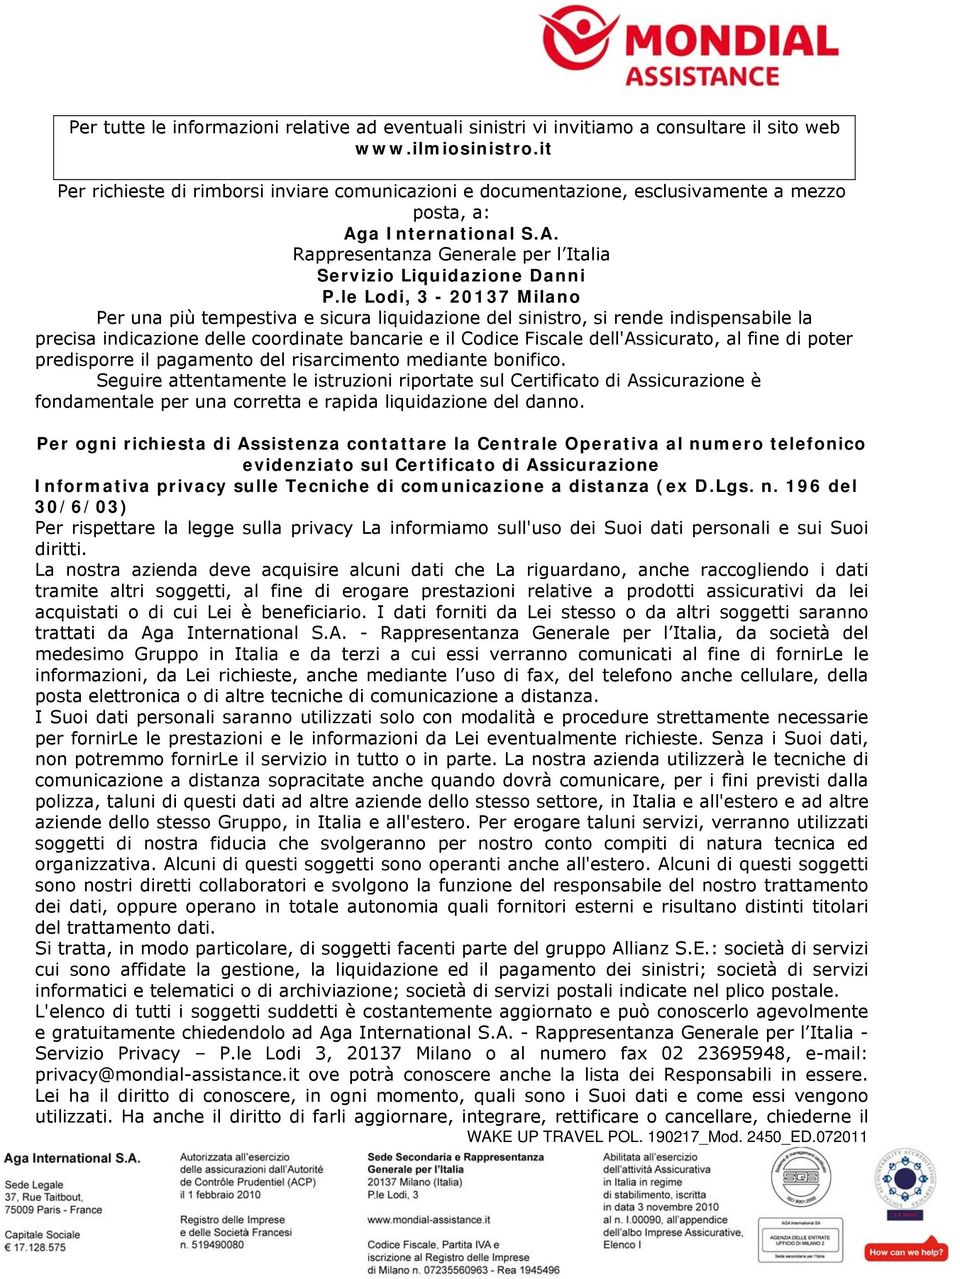 le Lodi, 3-20137 Milano Per una più tempestiva e sicura liquidazione del sinistro, si rende indispensabile la precisa indicazione delle coordinate bancarie e il Codice Fiscale dell'assicurato, al